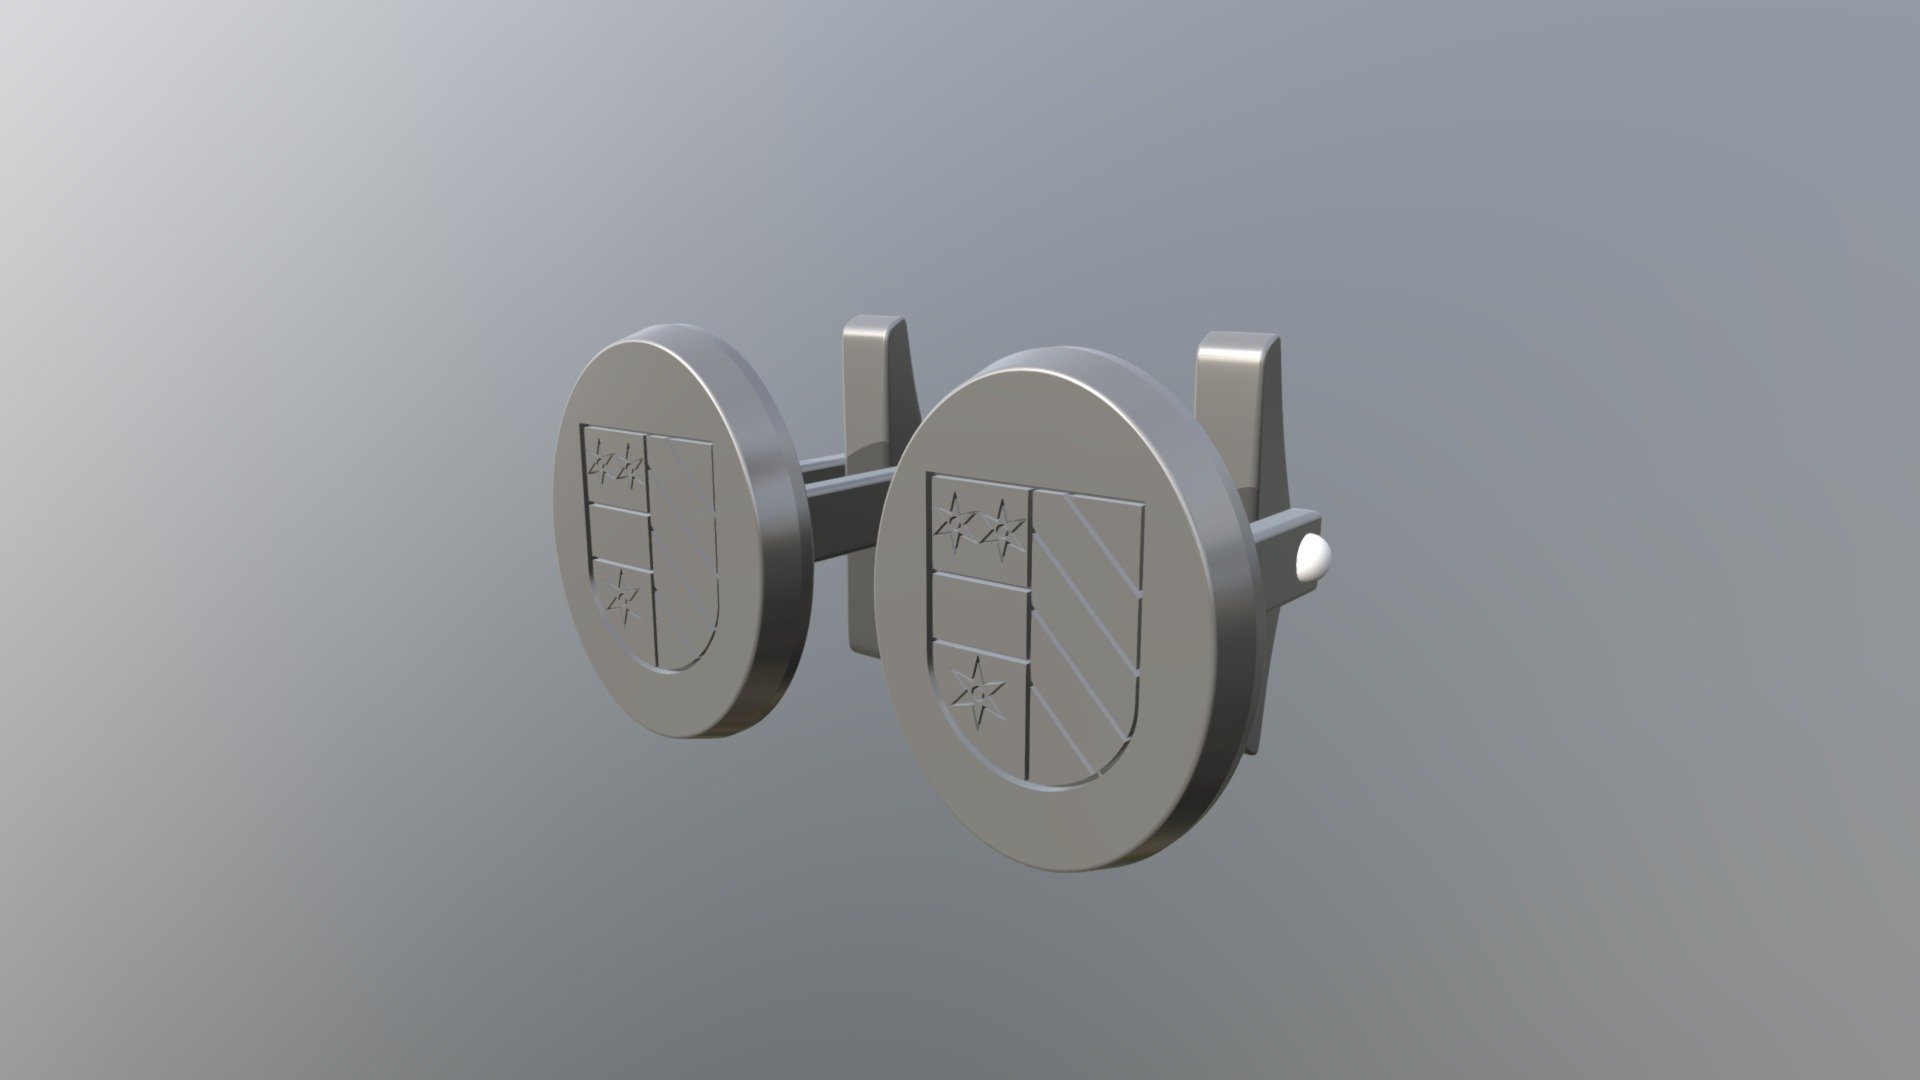 ARVID TUVLIND'S CUFFLINKS - 3D model by VE AND VILE (@veandvile) 3d model